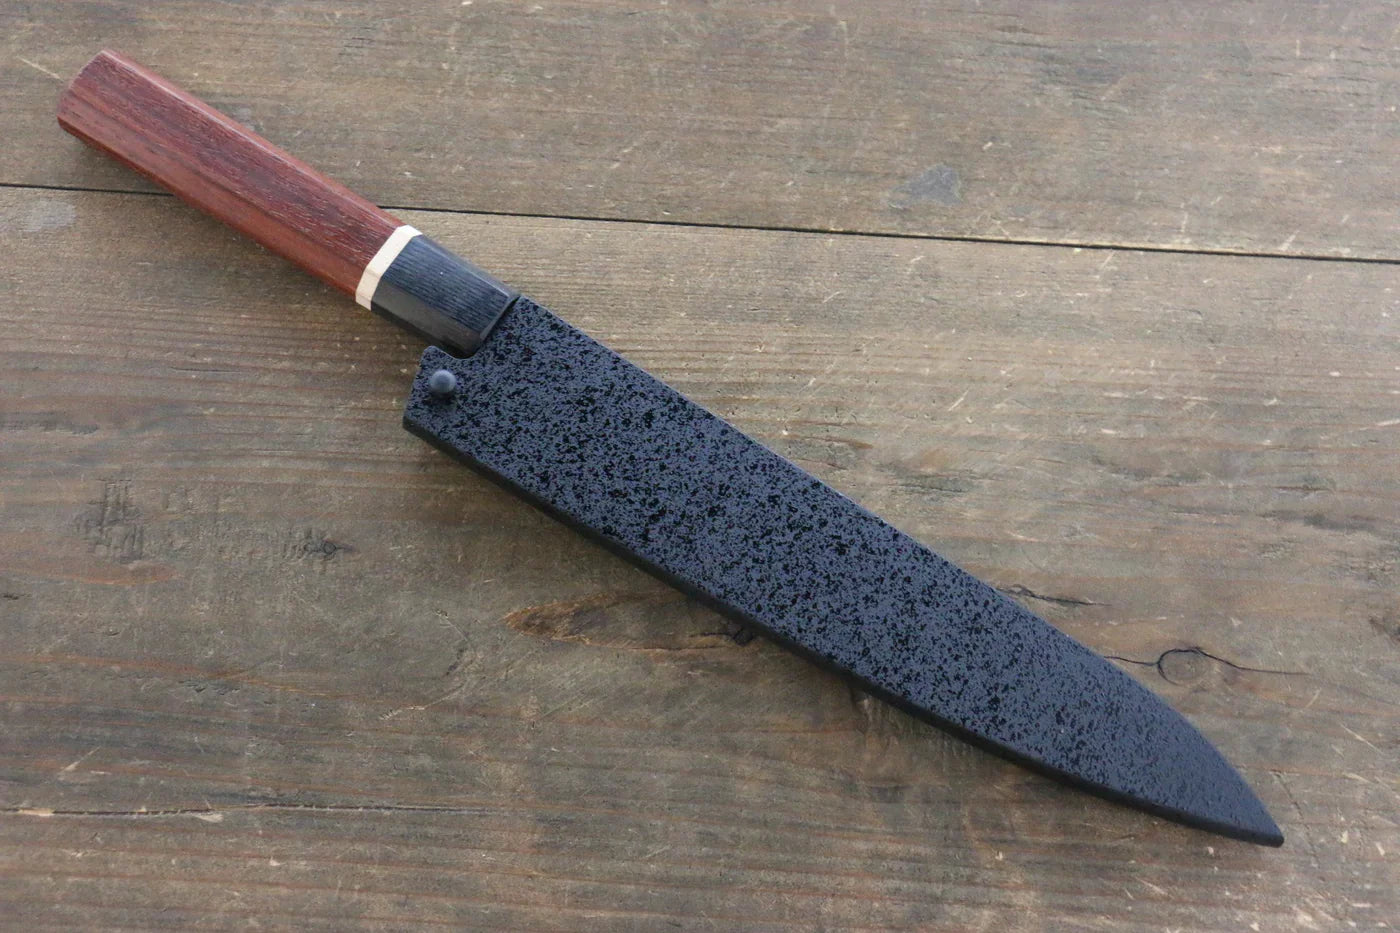 Bao dao gỗ Mộc Lan Dao nhỏ đa năng Petty Chốt gỗ ép 180mm